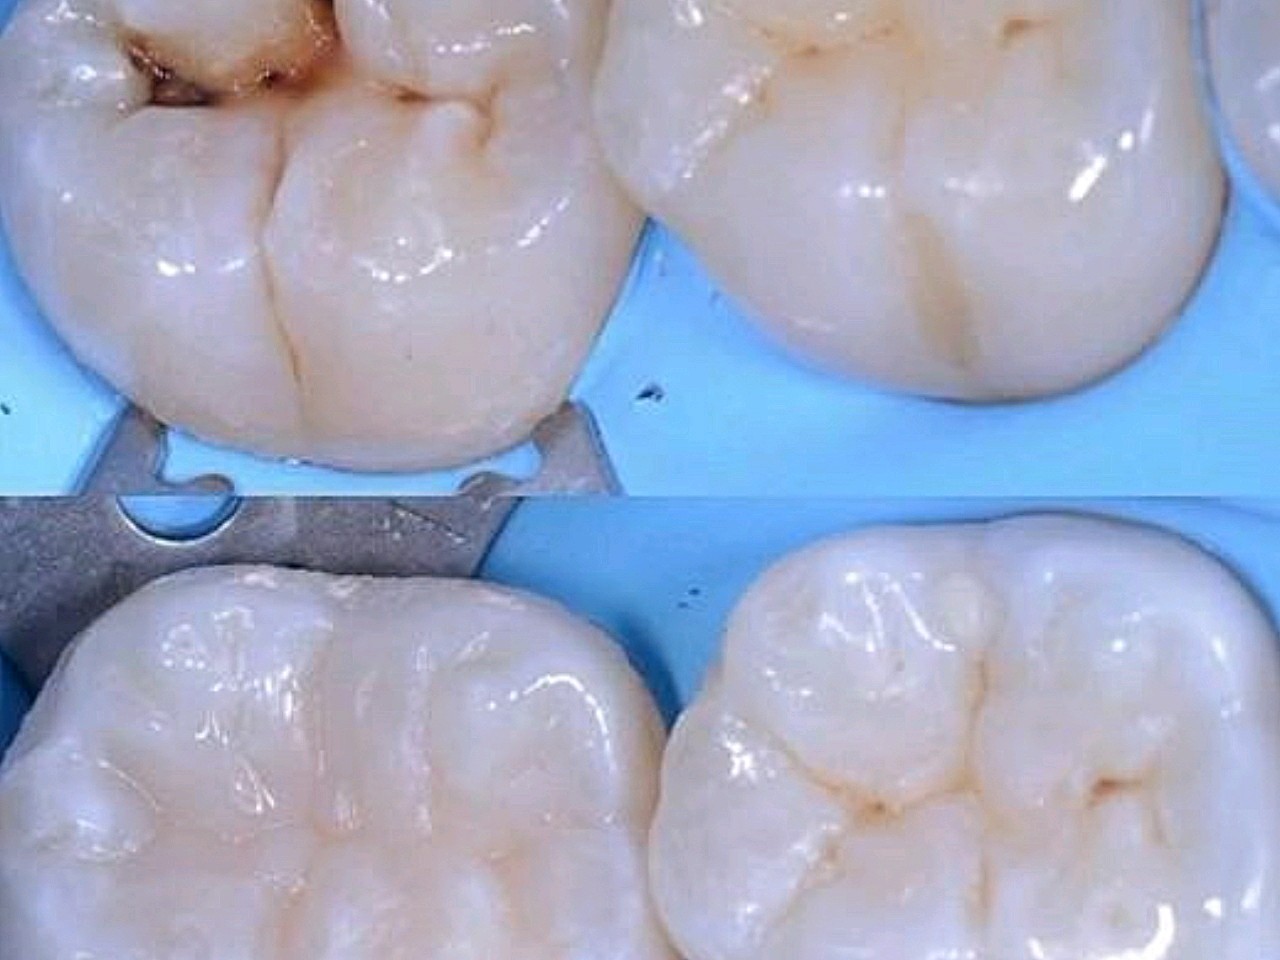 下面再分别说说补完这两类材料后的注意复合树脂补牙牙齿充填图片补牙